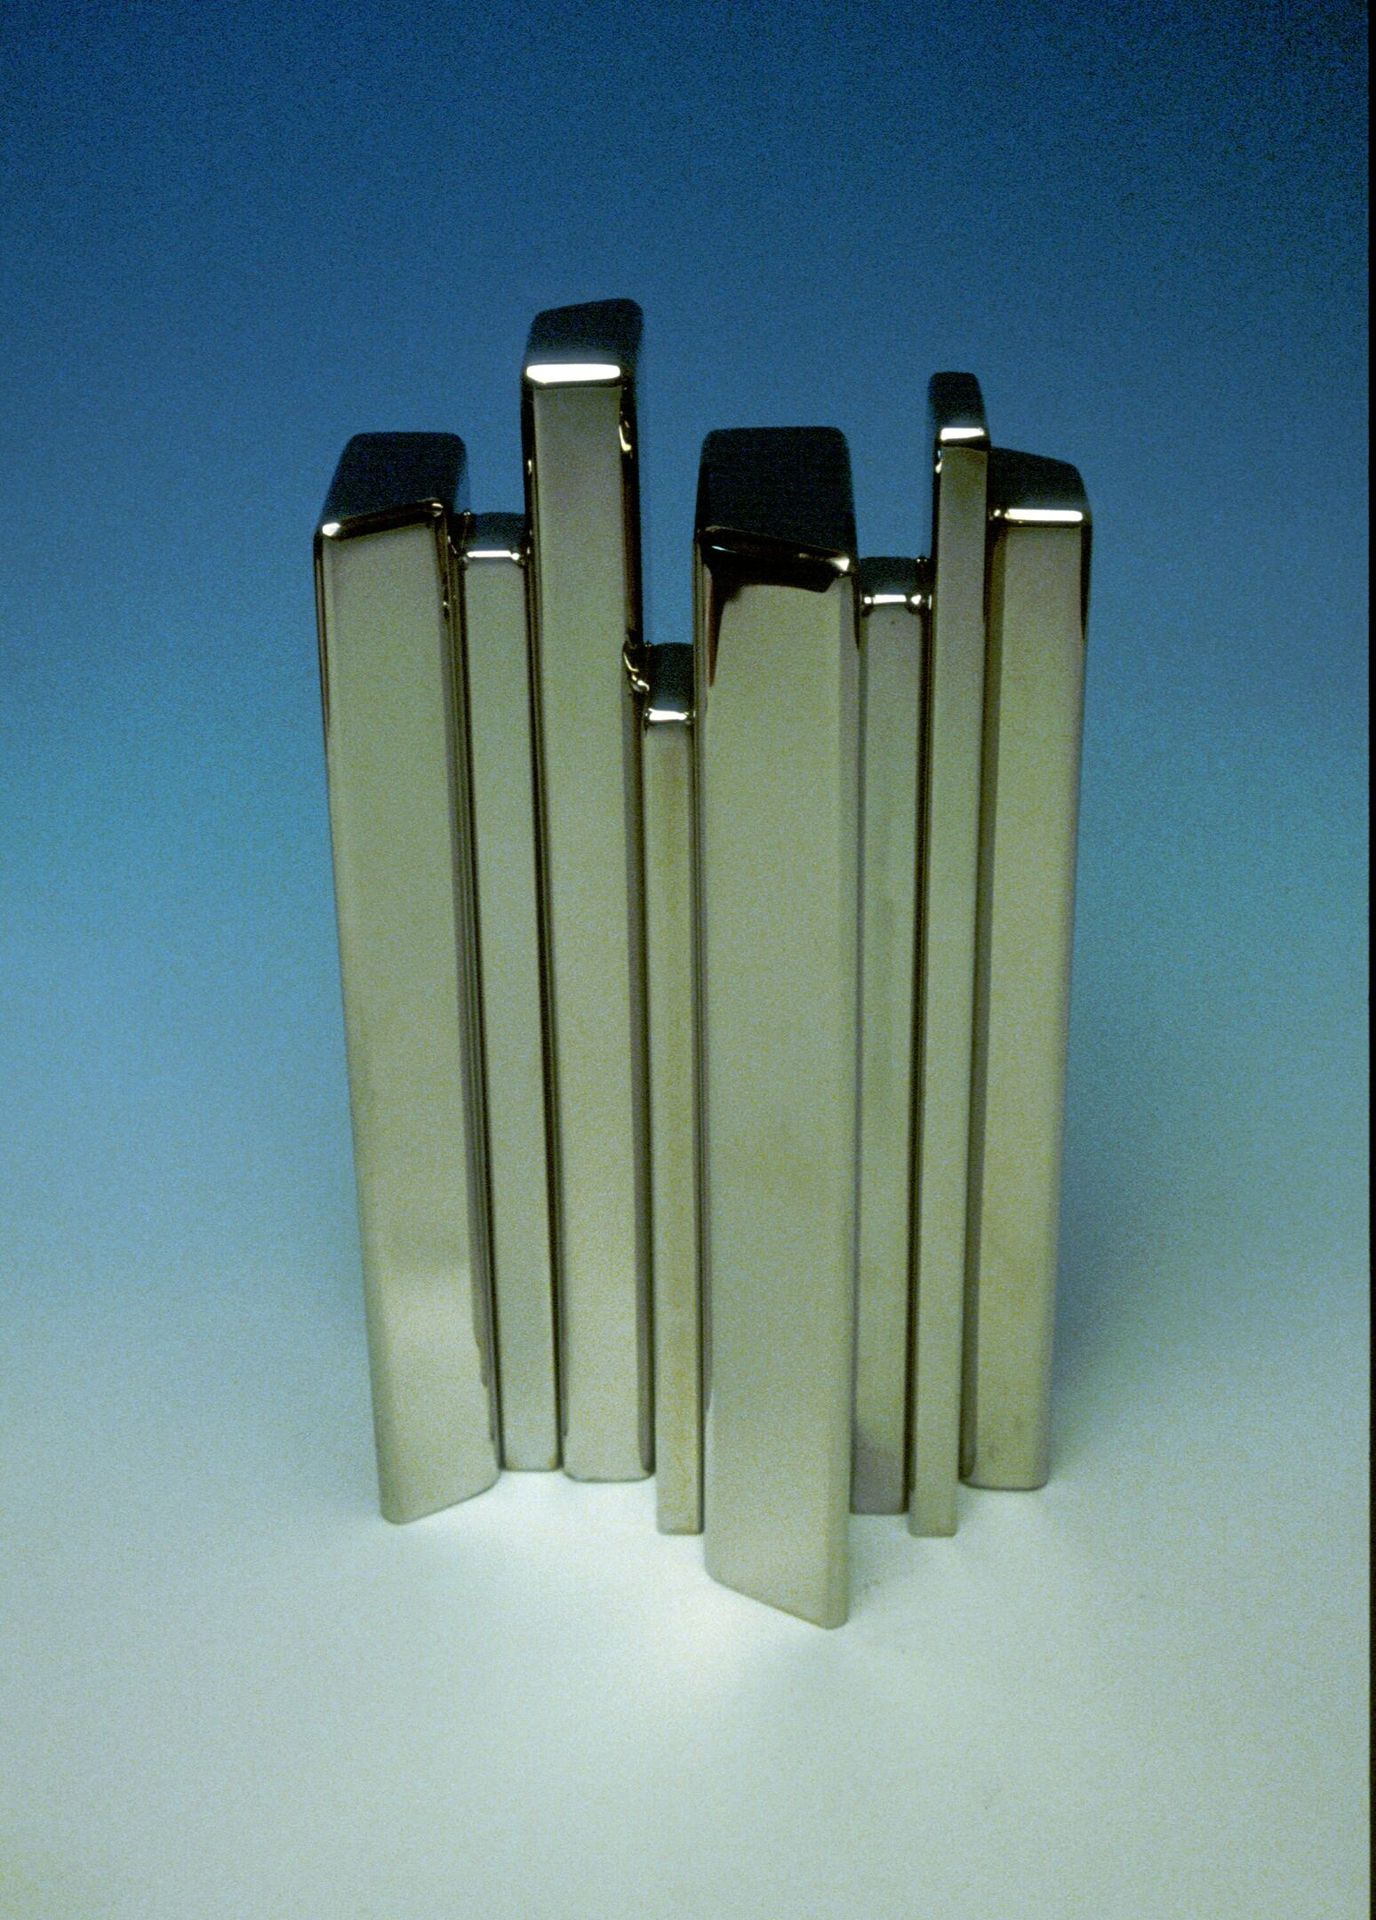 Null Les Verticales.

镀镍钢。1983年。

15cm x 8,5cm x 4,8cm。



展览于2022年9月17日星期六举行，只接&hellip;